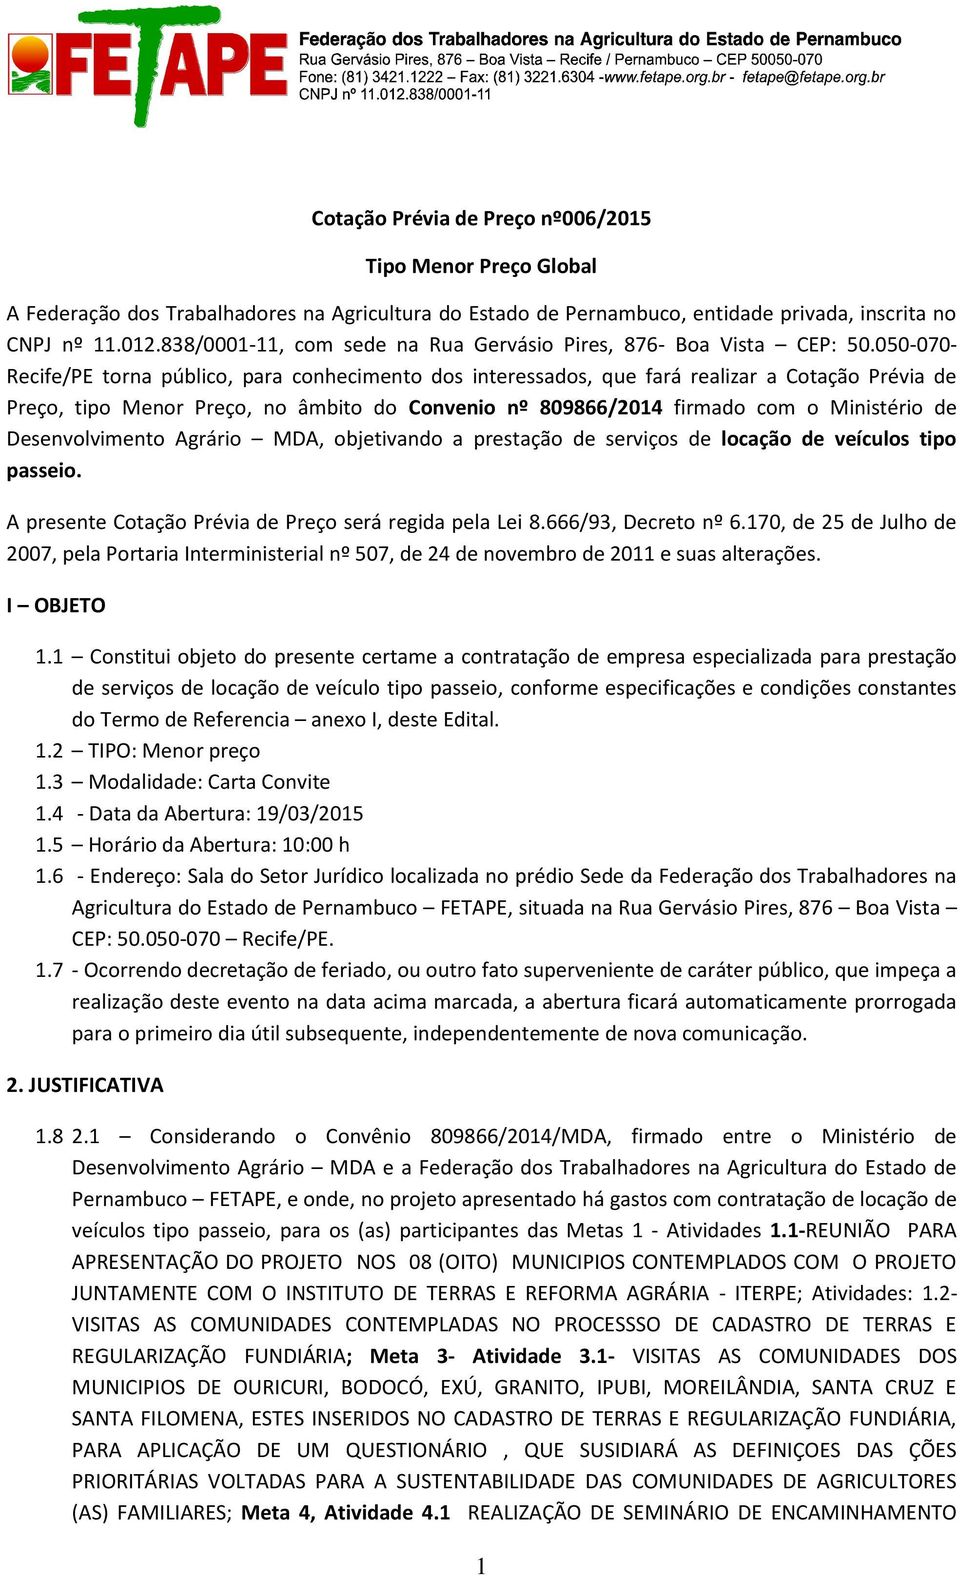 050-070- Recife/PE torna público, para conhecimento dos interessados, que fará realizar a Cotação Prévia de Preço, tipo Menor Preço, no âmbito do Convenio nº 809866/2014 firmado com o Ministério de